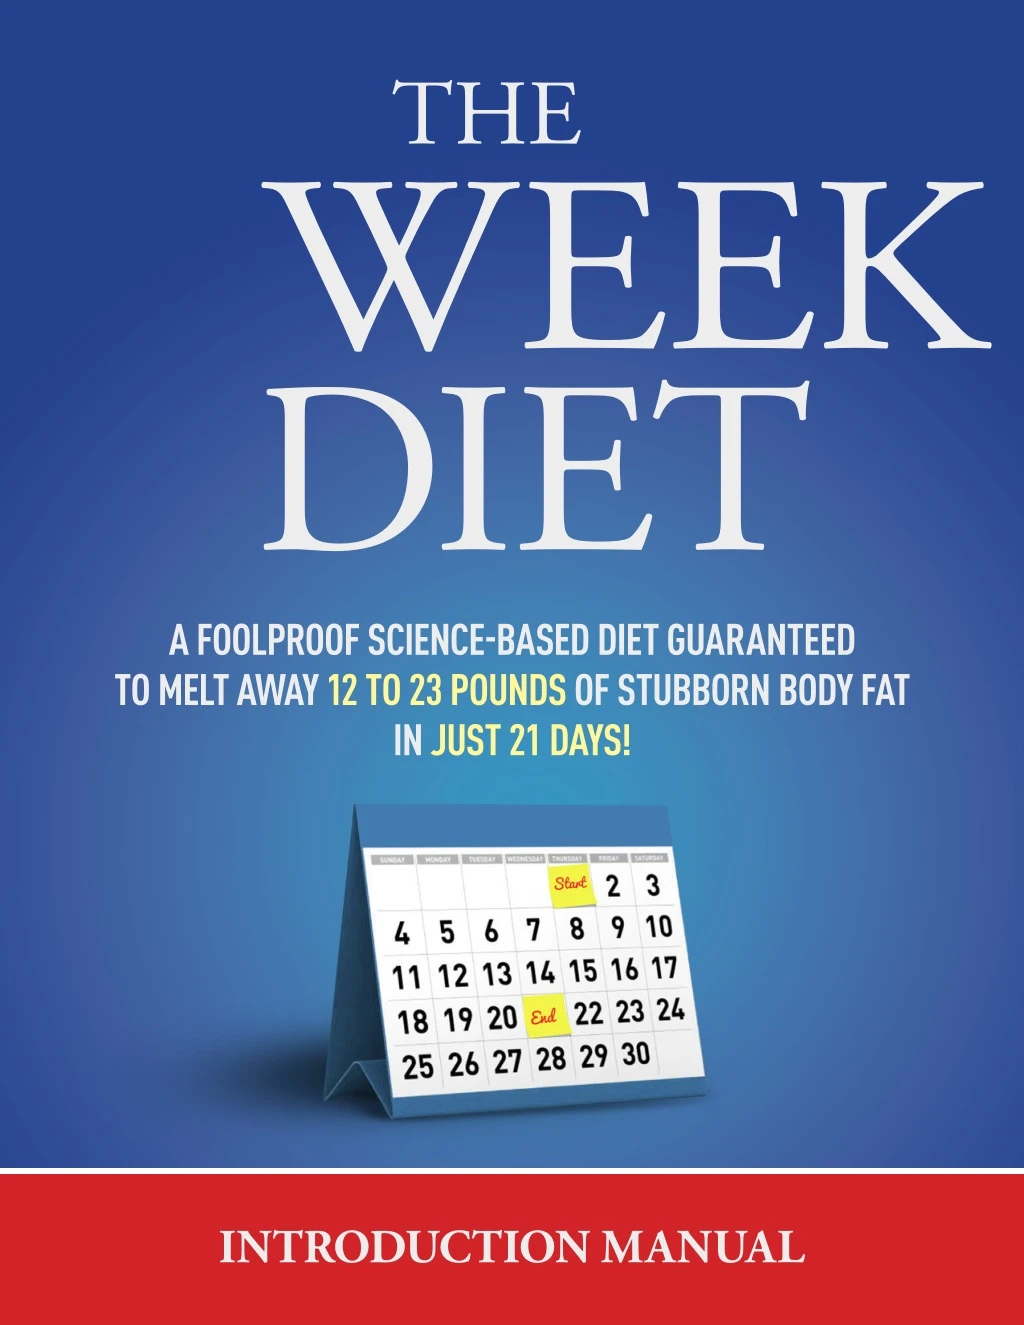 diet 3 week a foolproof scienceebased diet n.